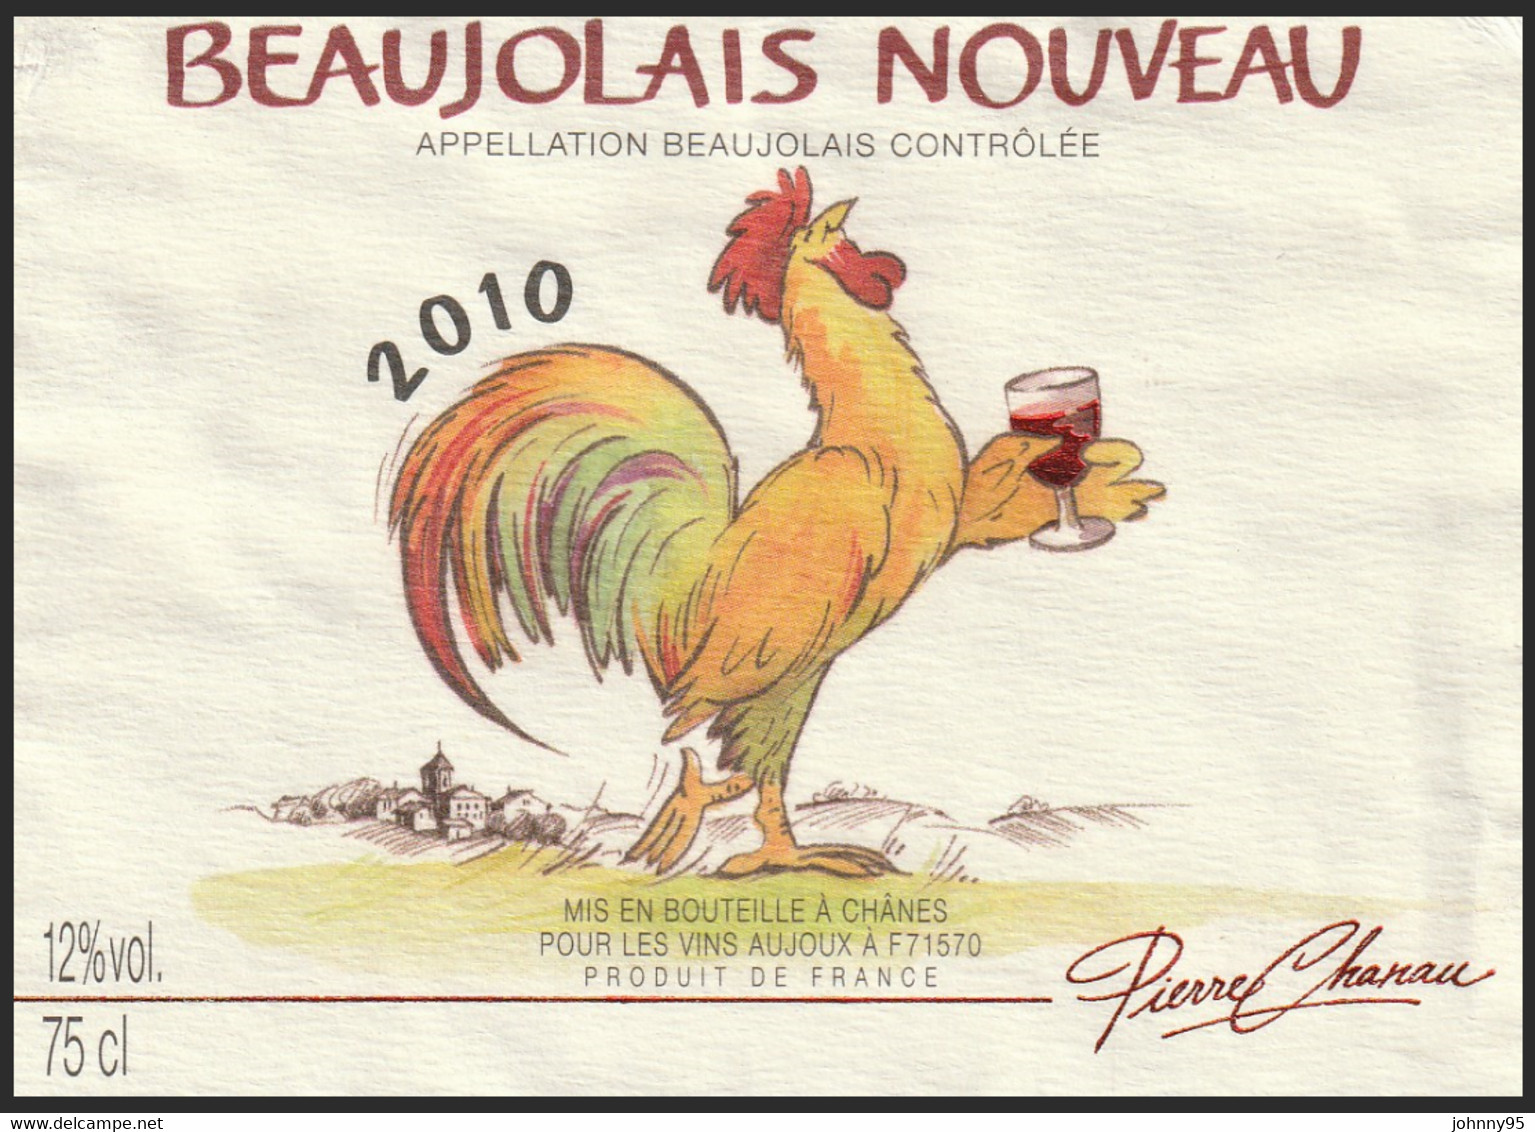 Coq Sur étiquette De Vin - Beaujolais Nouveau 2010 Pierre Chanau - Vins Aujoux : Chânes Saône Et Loire - Hähne